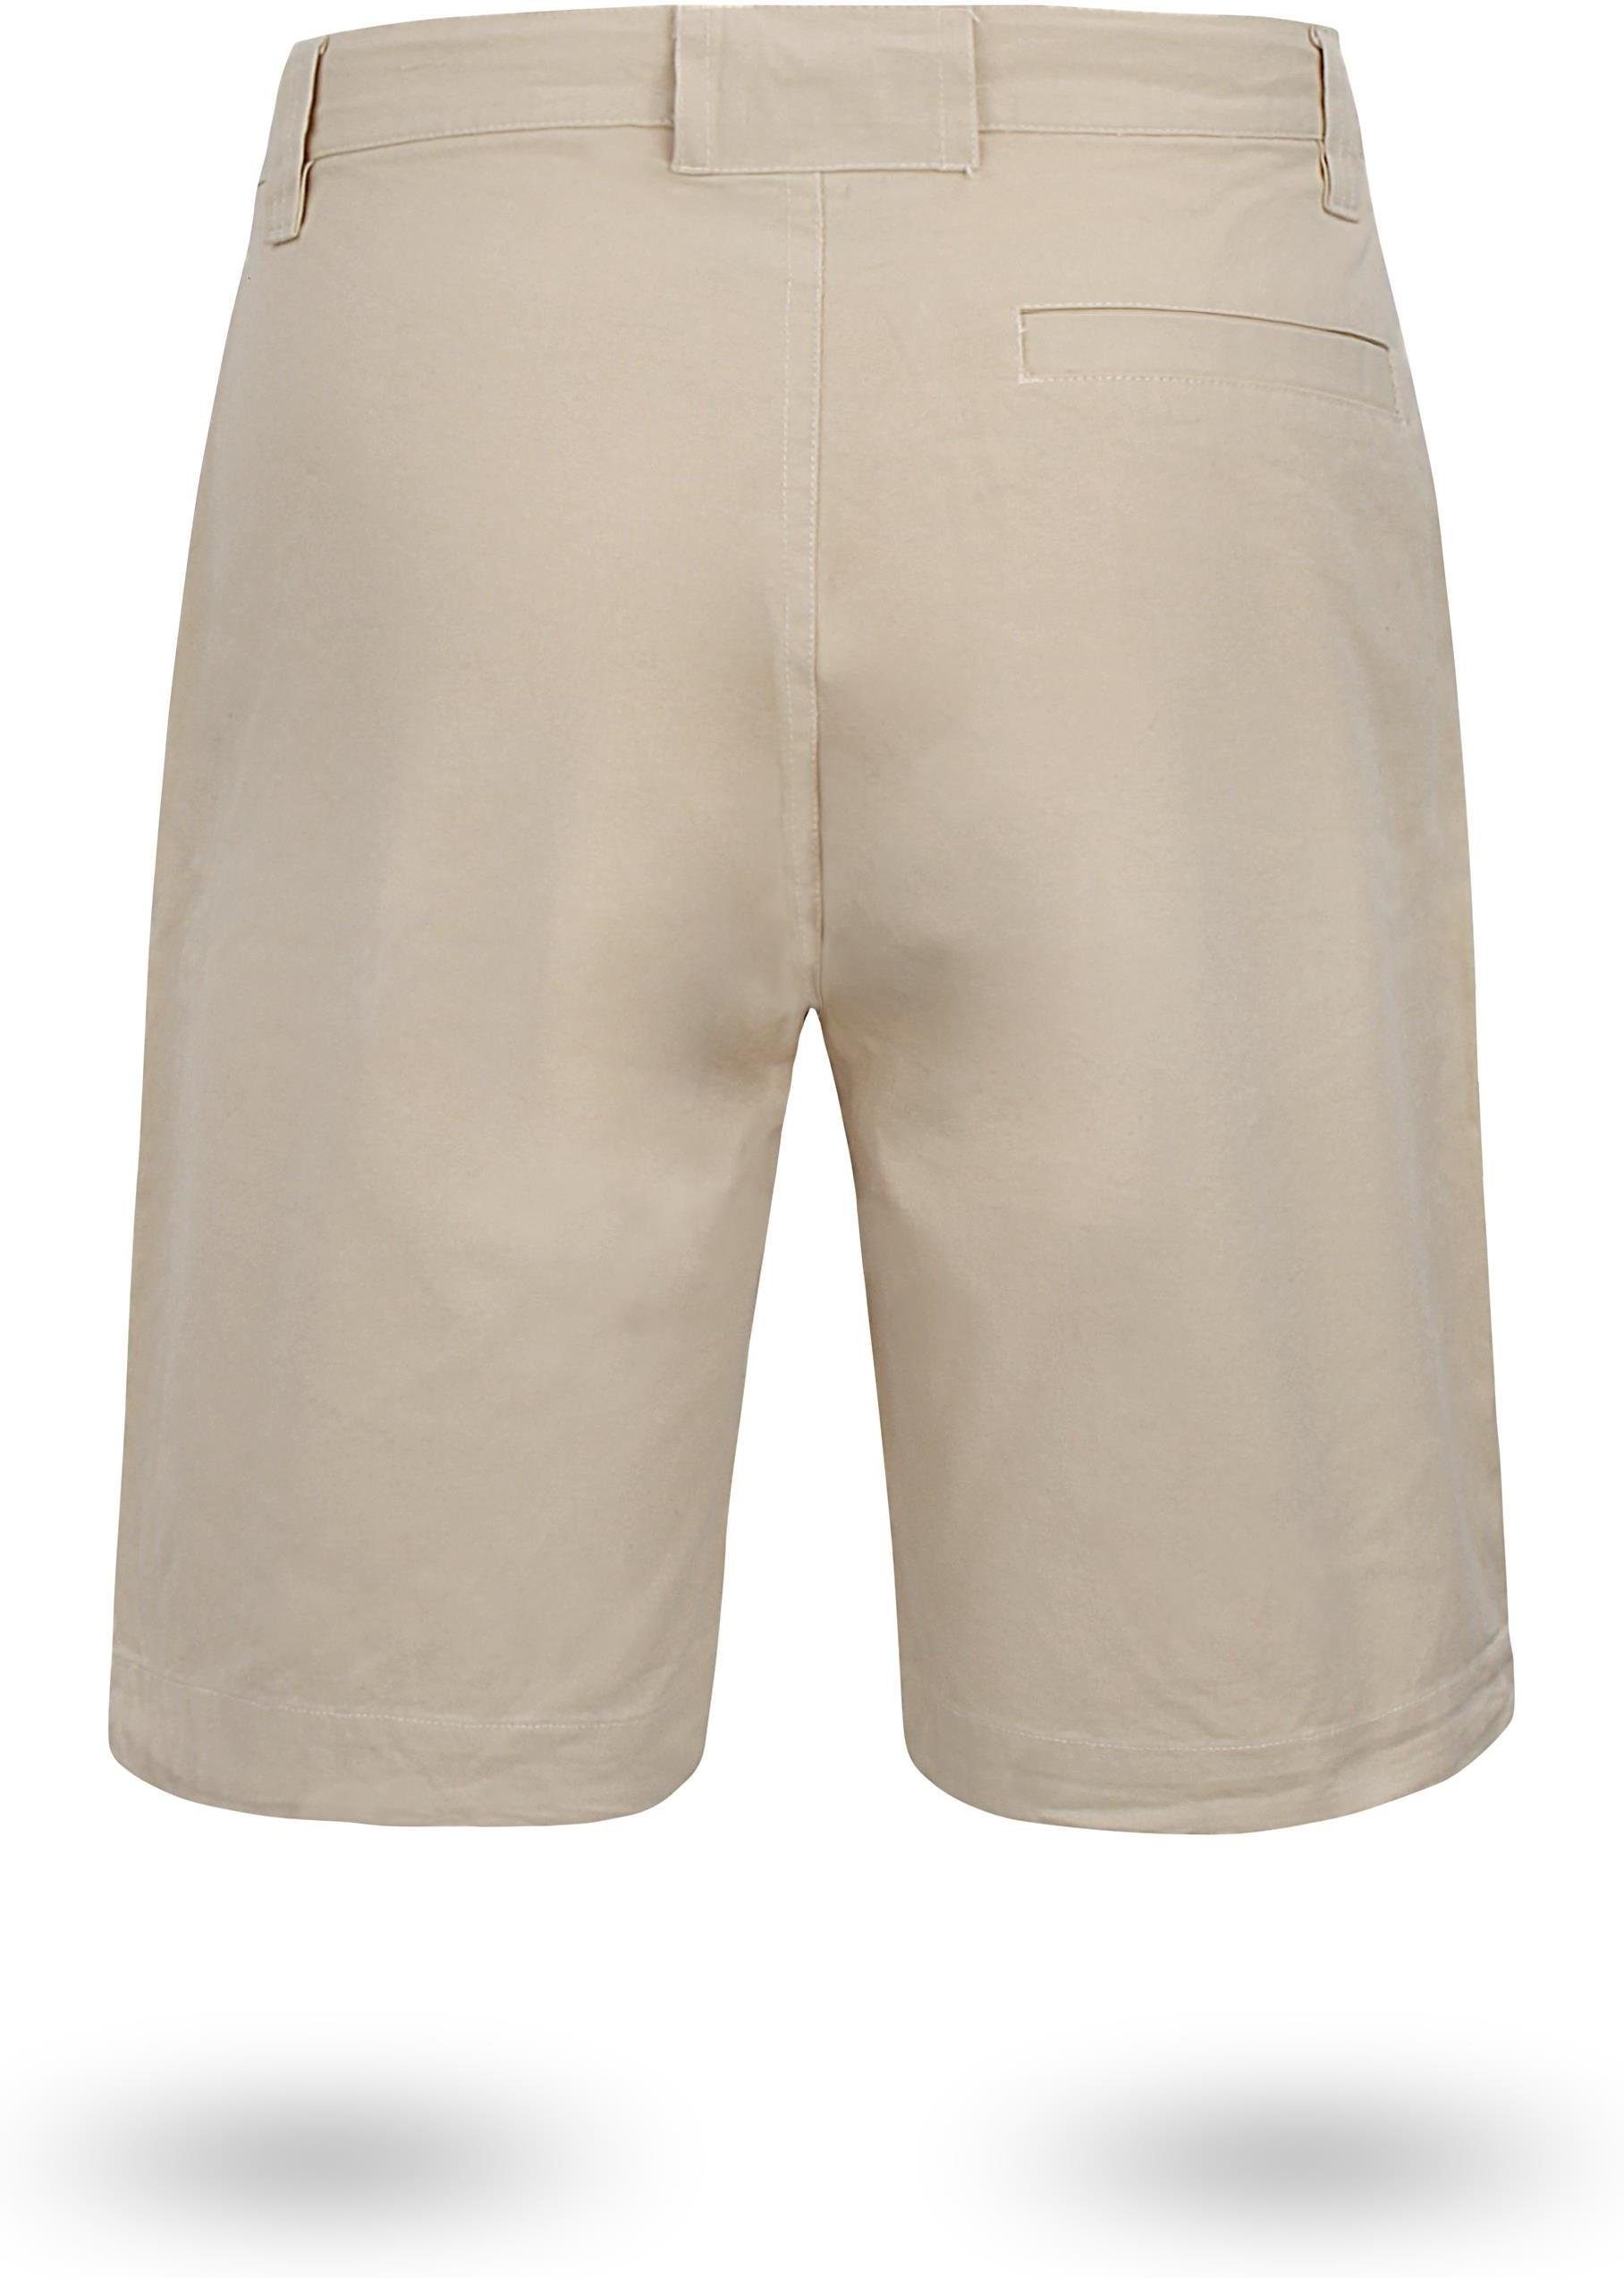 Gobi Bermudas Khaki mit Zippertasche Shorts Bio-Baumwolle Chino Sommershort Shorts Vintage Herren normani kurze aus invisible 100%